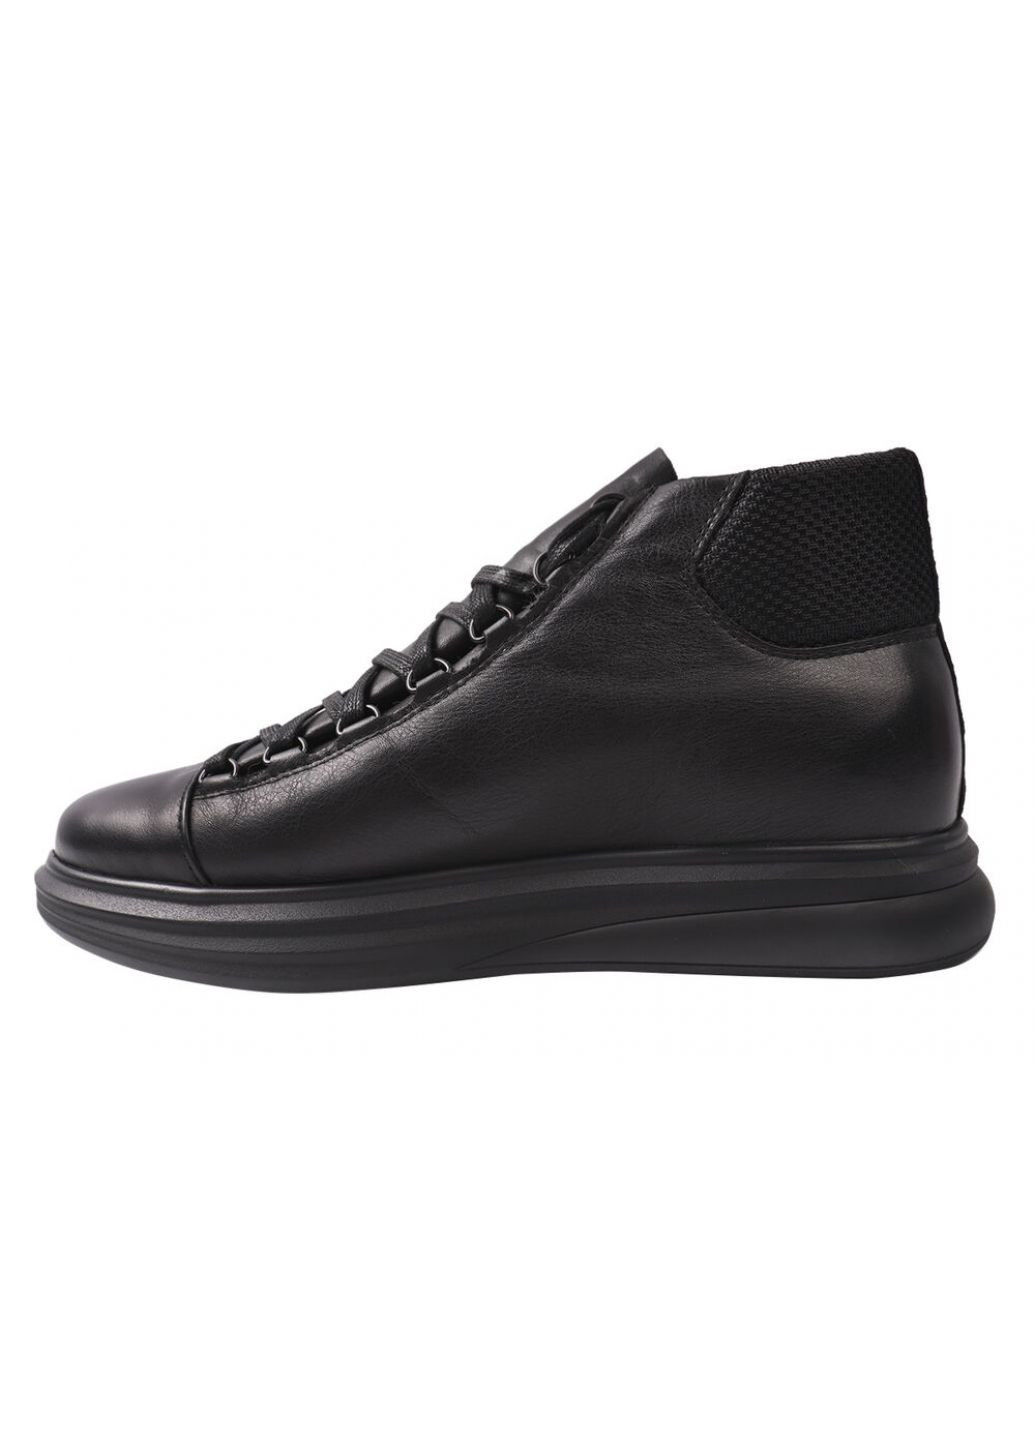 Черные ботинки мужские из натуральной кожи, на платформе, на шнуровке, черные, украина Vadrus